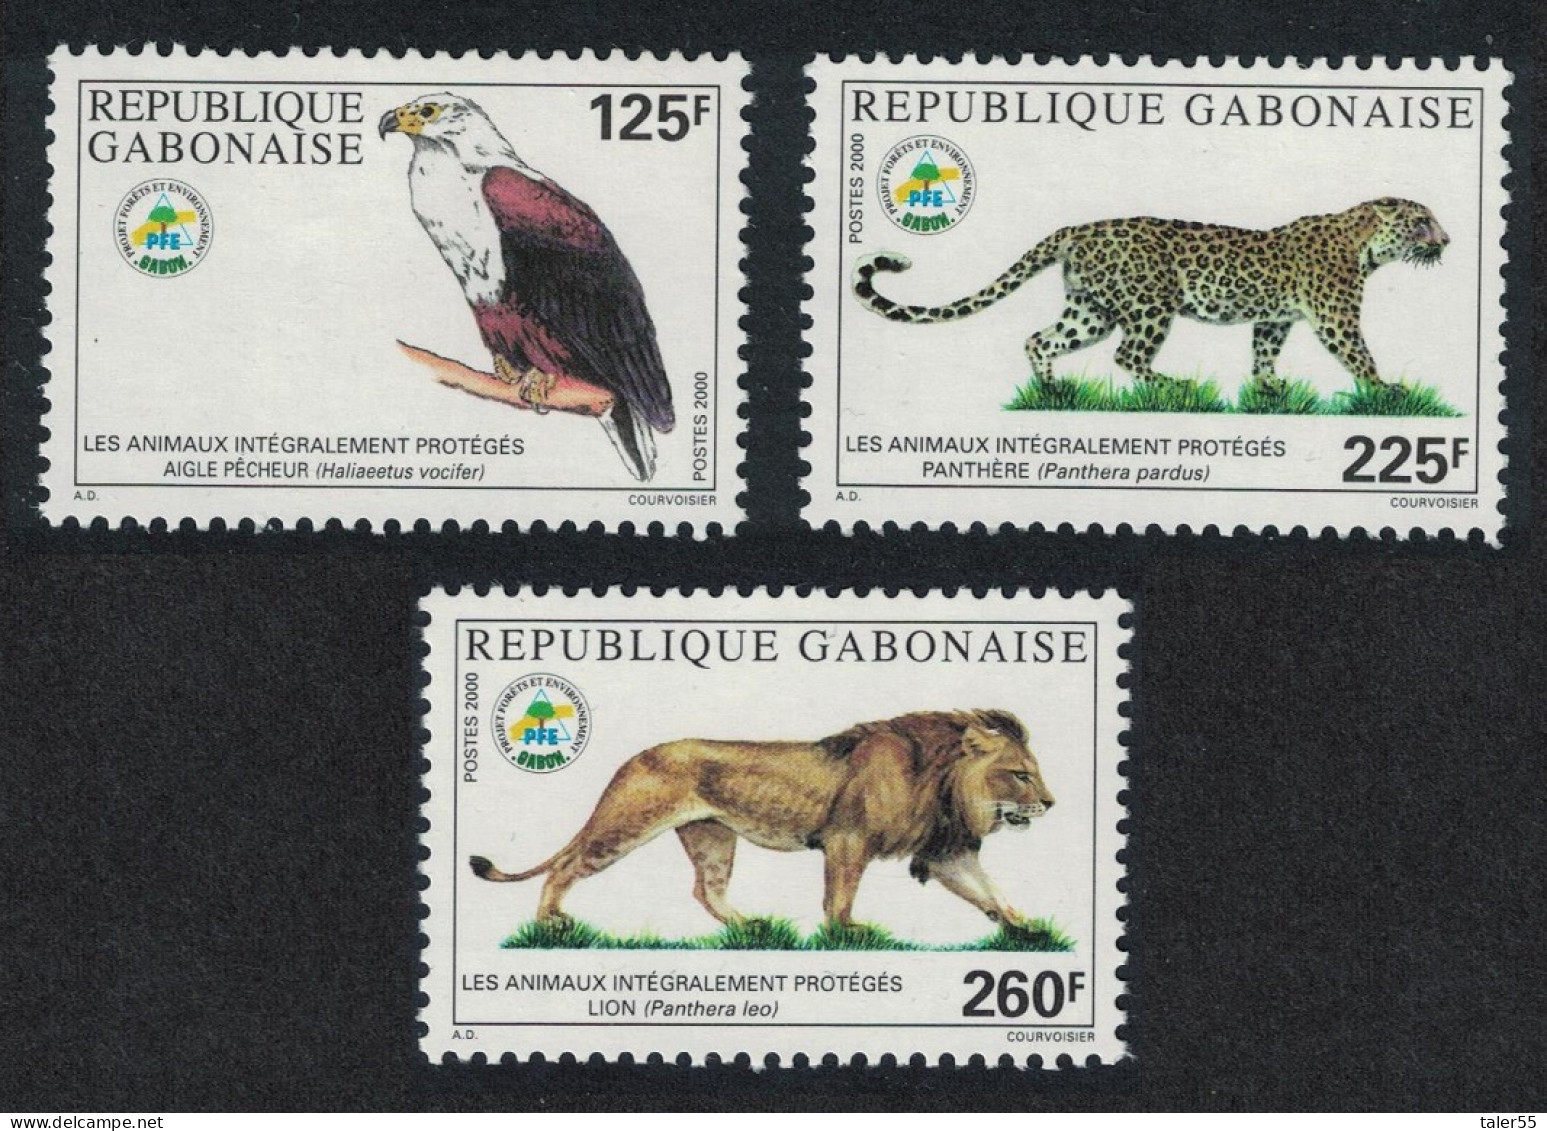 Gabon Protection Of Indigenous Species 3v 2000 MNH SG#1345-1347 - Gabon